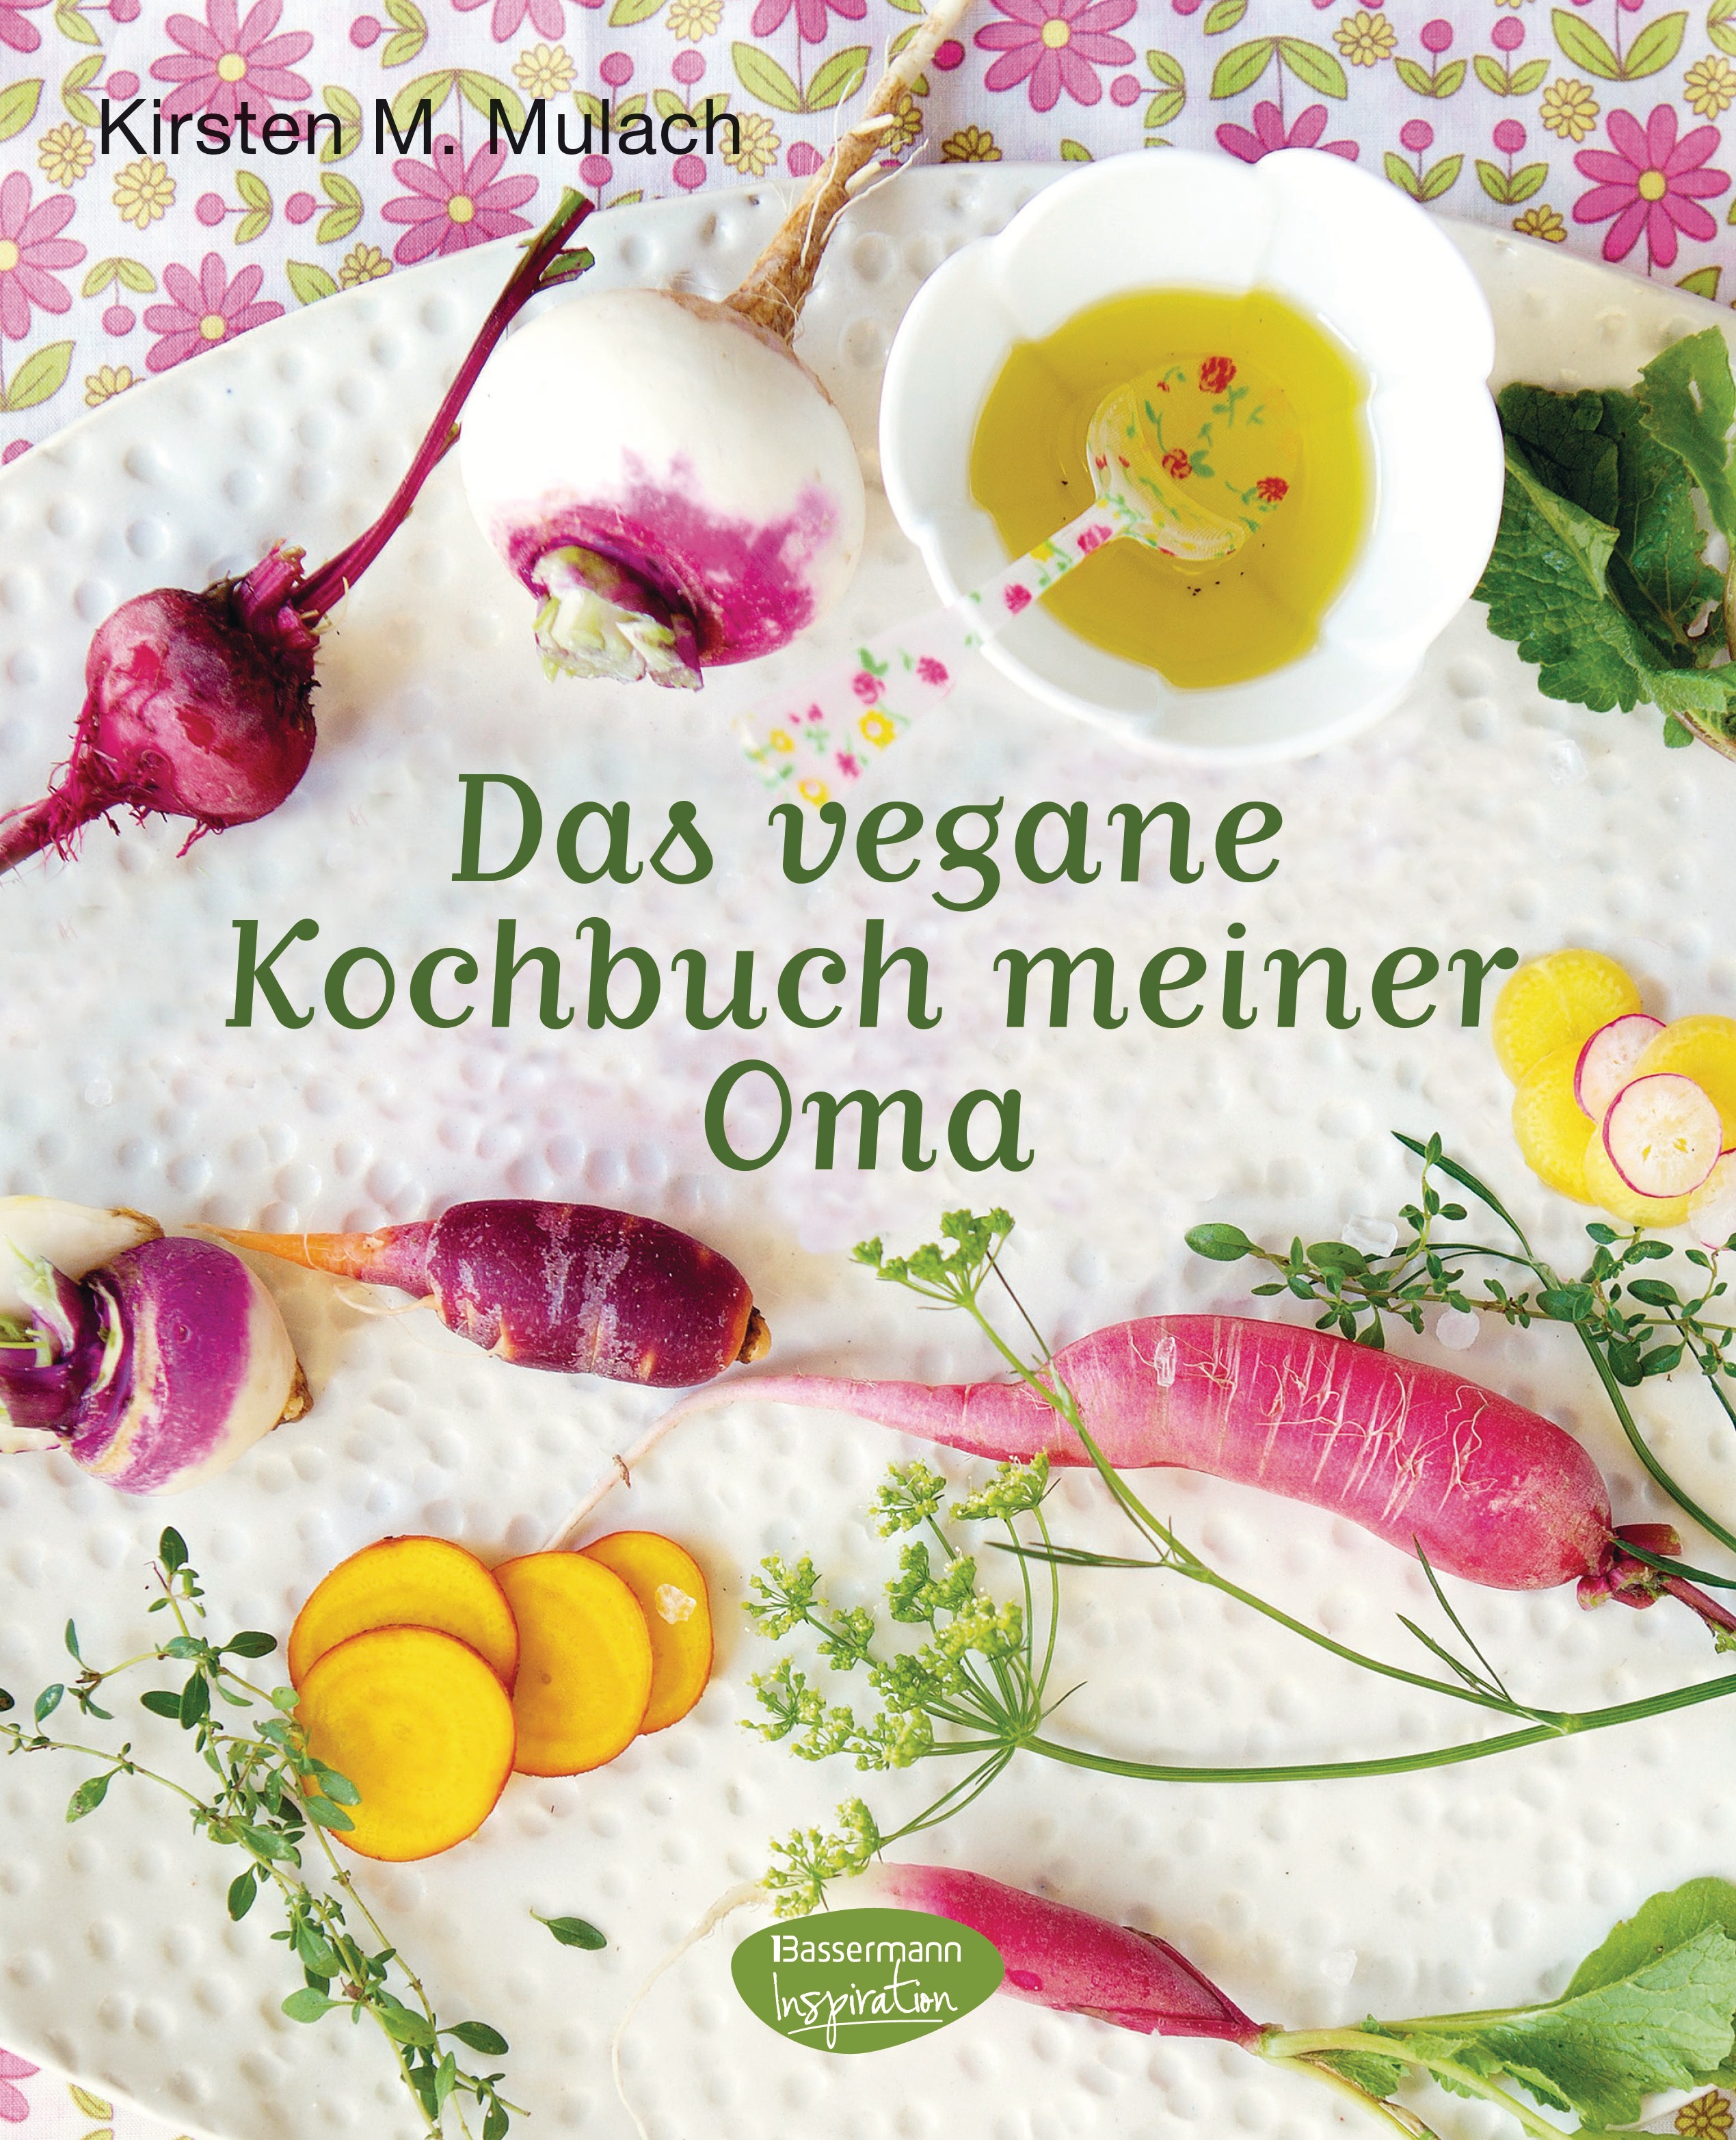 Das vegane Kochbuch meiner Oma, Bassermann 2015